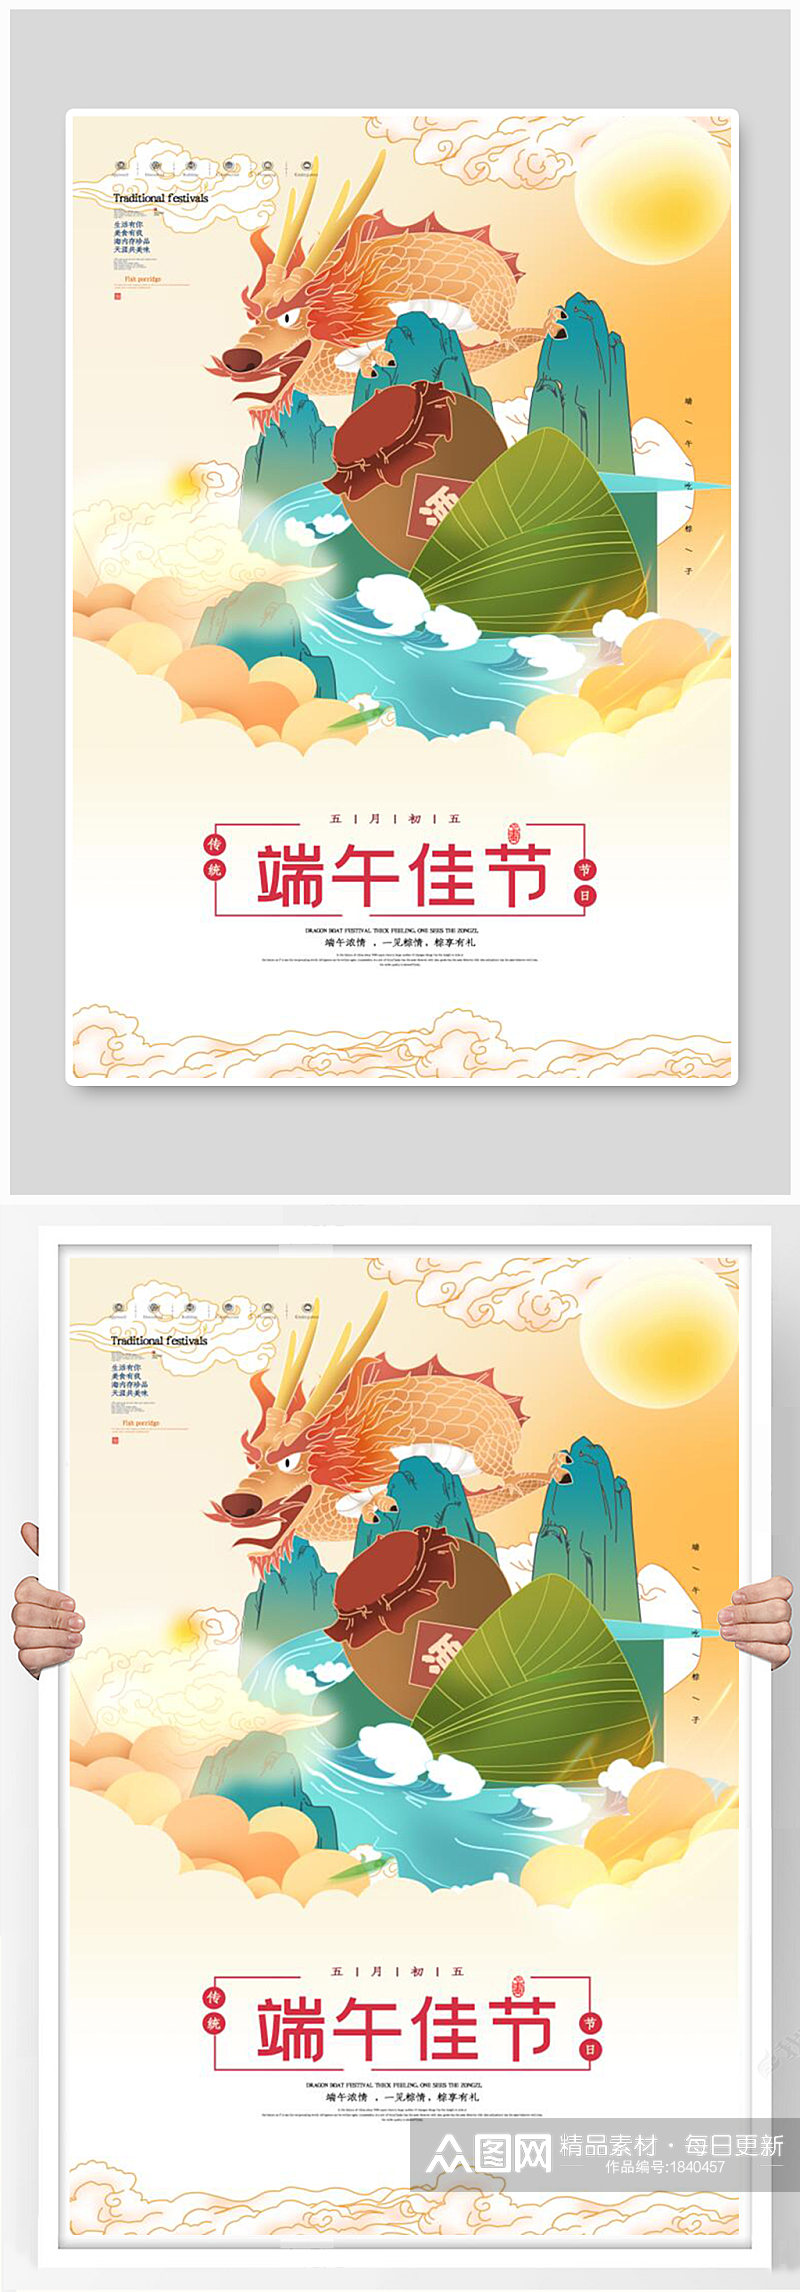 简约中国风龙舟节粽子促销海报素材